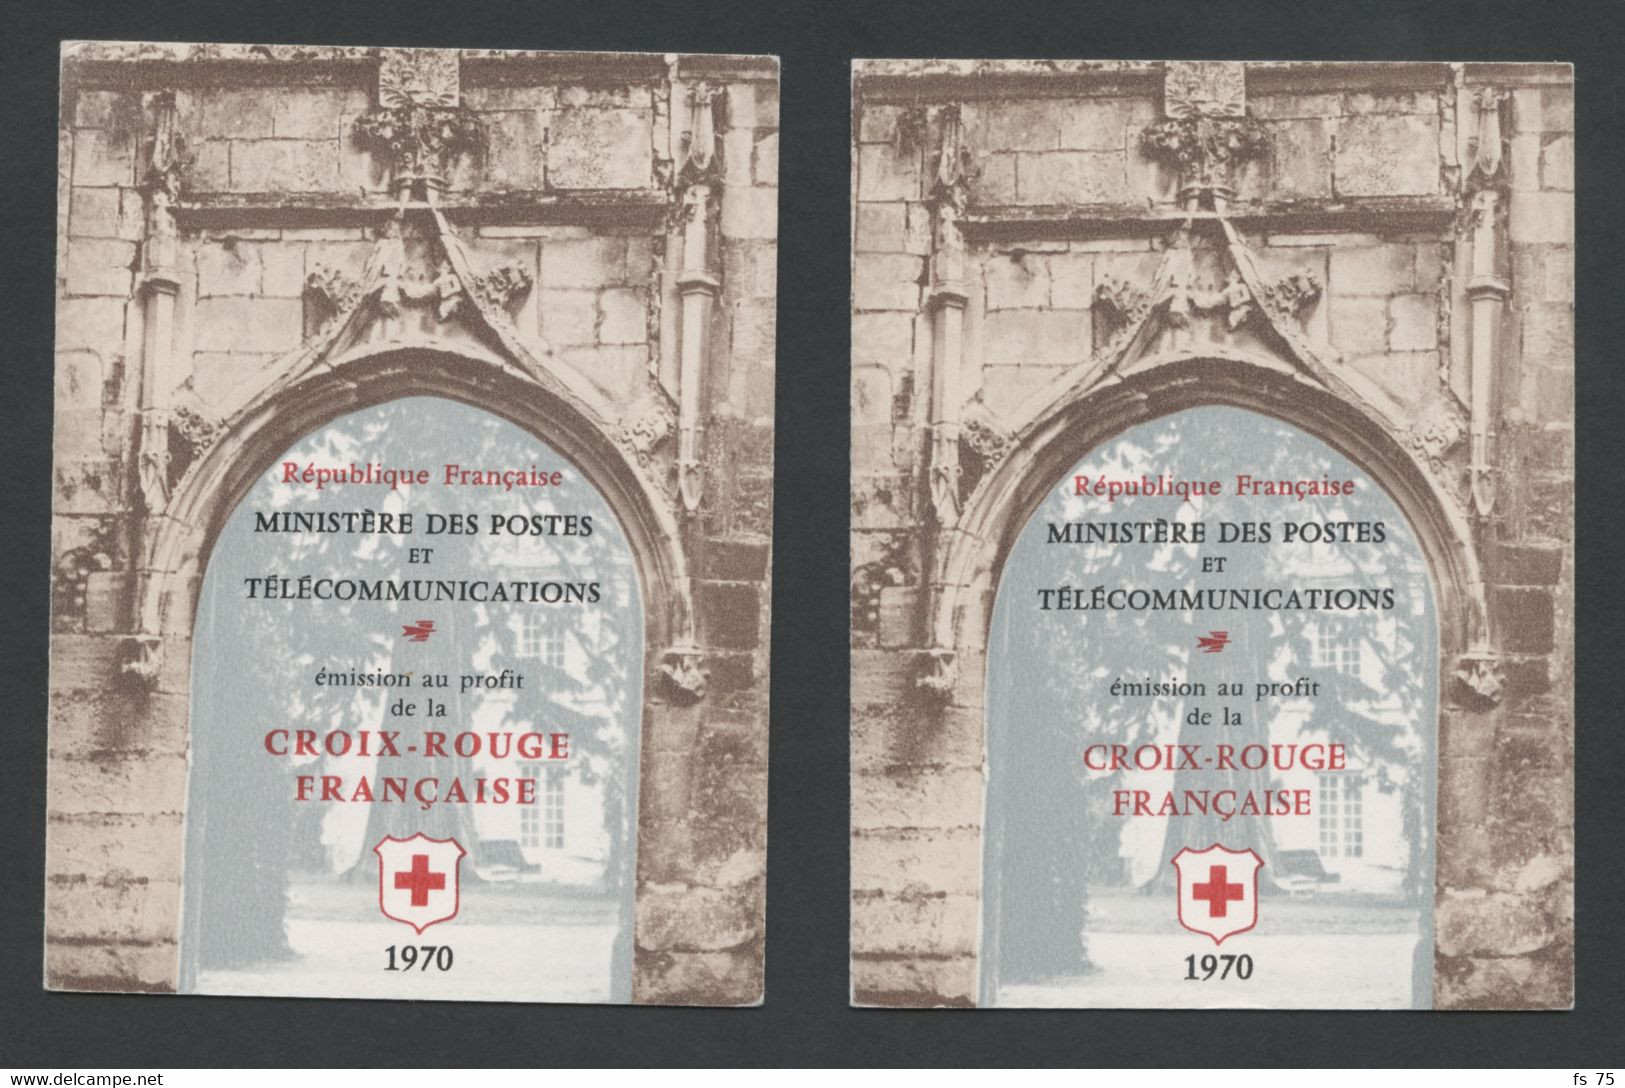 FRANCE - CARNETS N°2019 ET 2019a CROIX ROUGE 1970 - INSCRIPTIONS SUR LA COUVERTURE DE 32MM ET 27MM - Croix Rouge